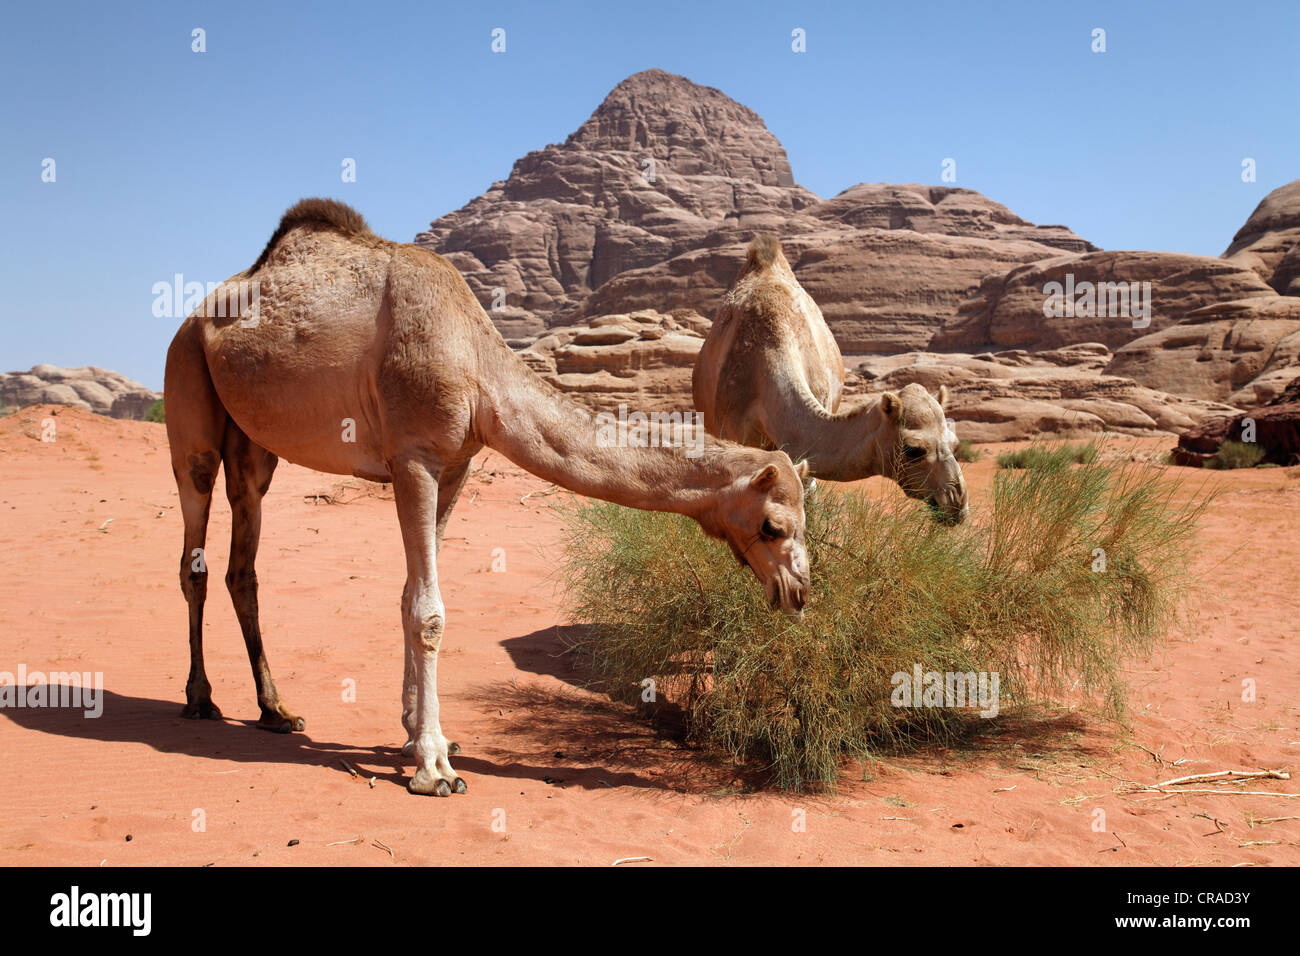 Dromedari o cammelli arabe (Camelus dromedarius) alimentazione su una boccola nel deserto con la sabbia rossa, Wadi Rum Foto Stock